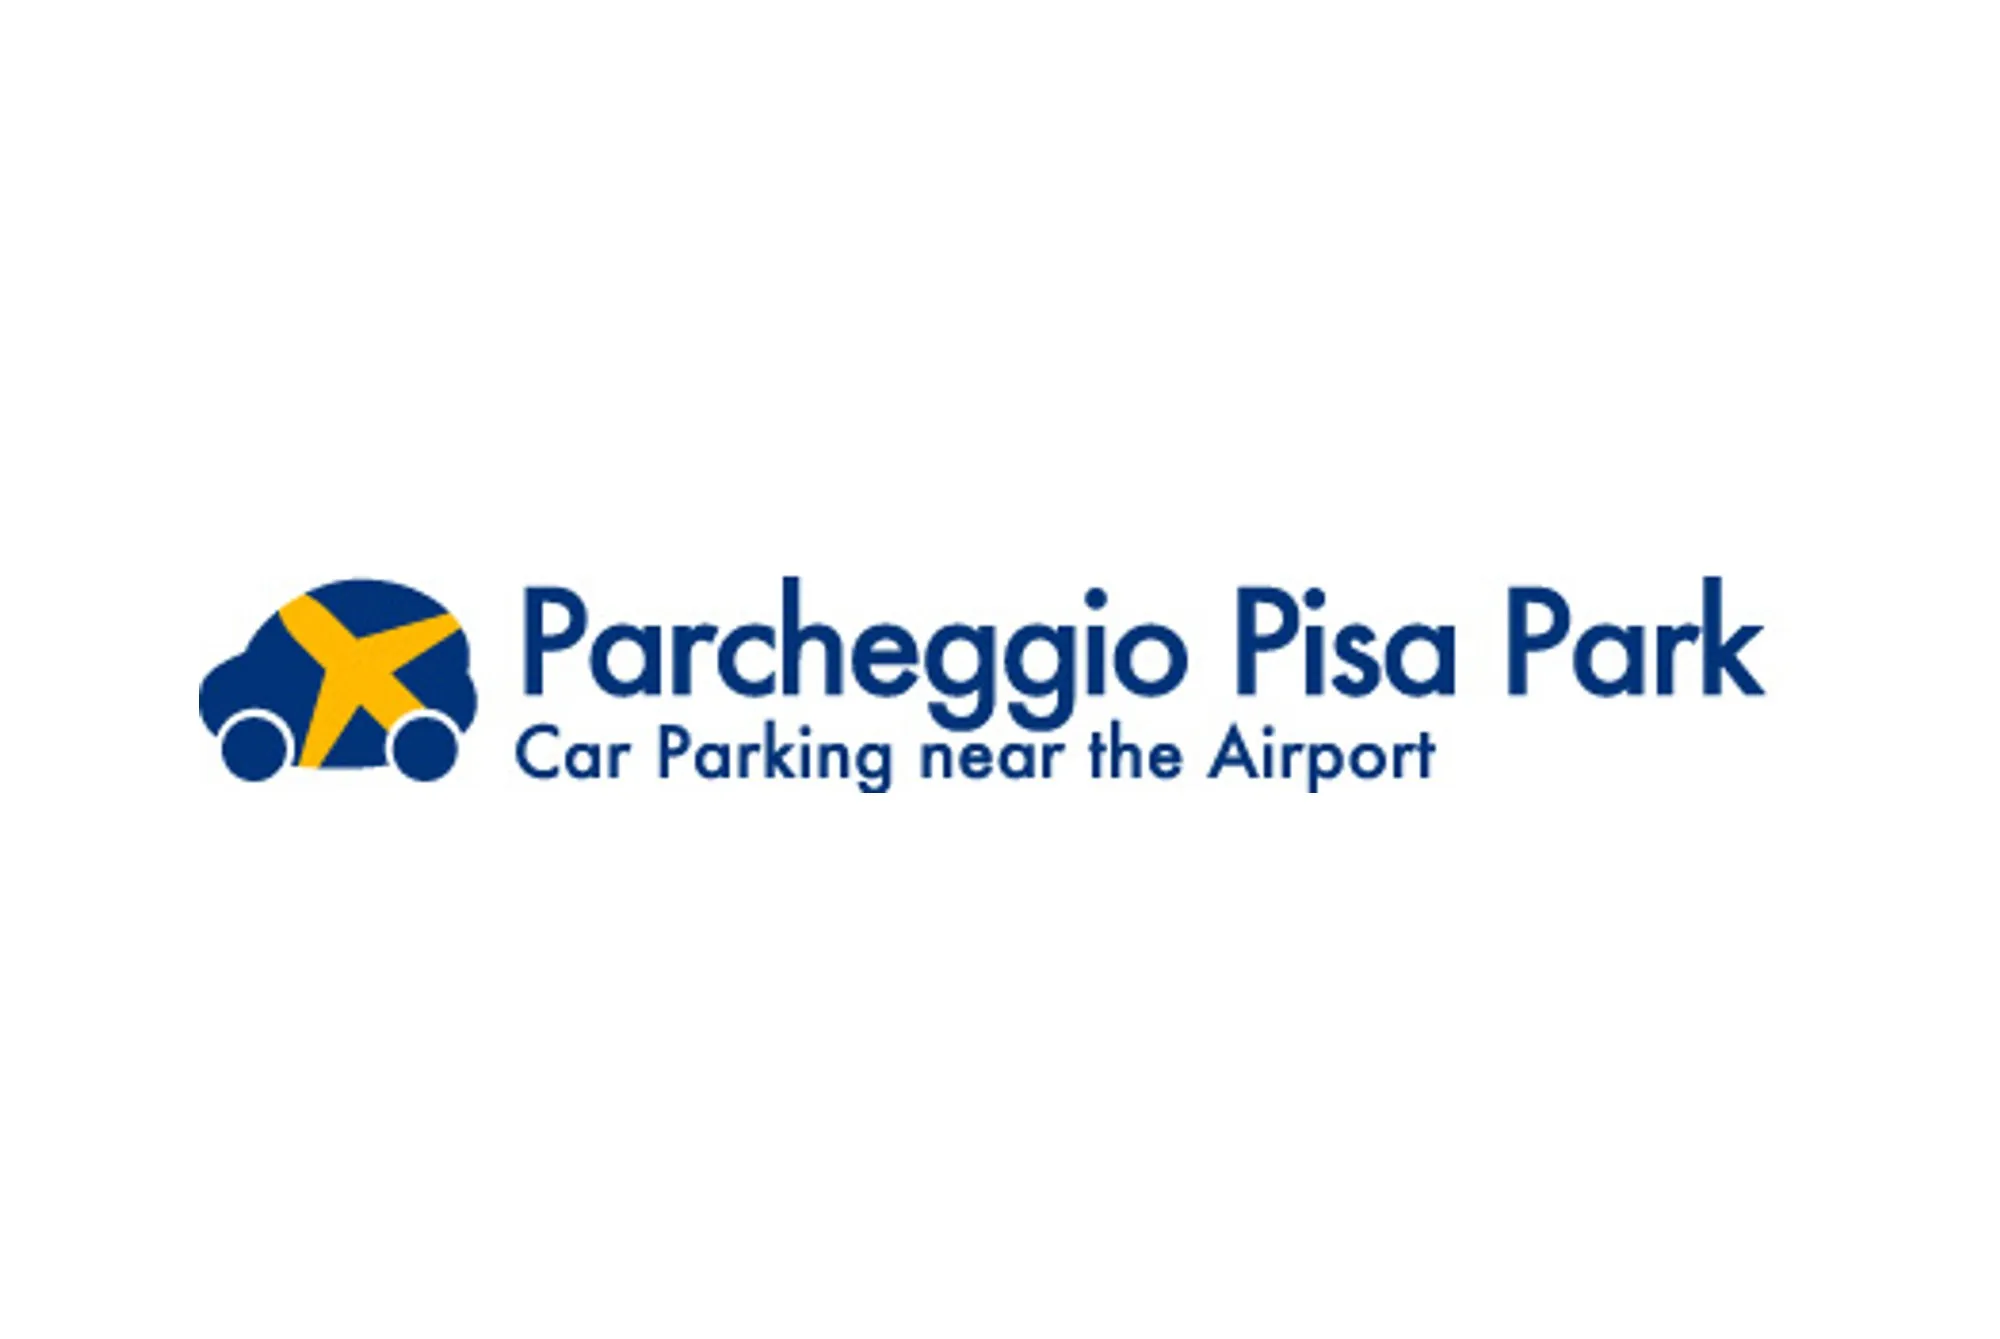 Pisa Park (Paga online o in parcheggio) - Parking Aéroport Pise - picture 1